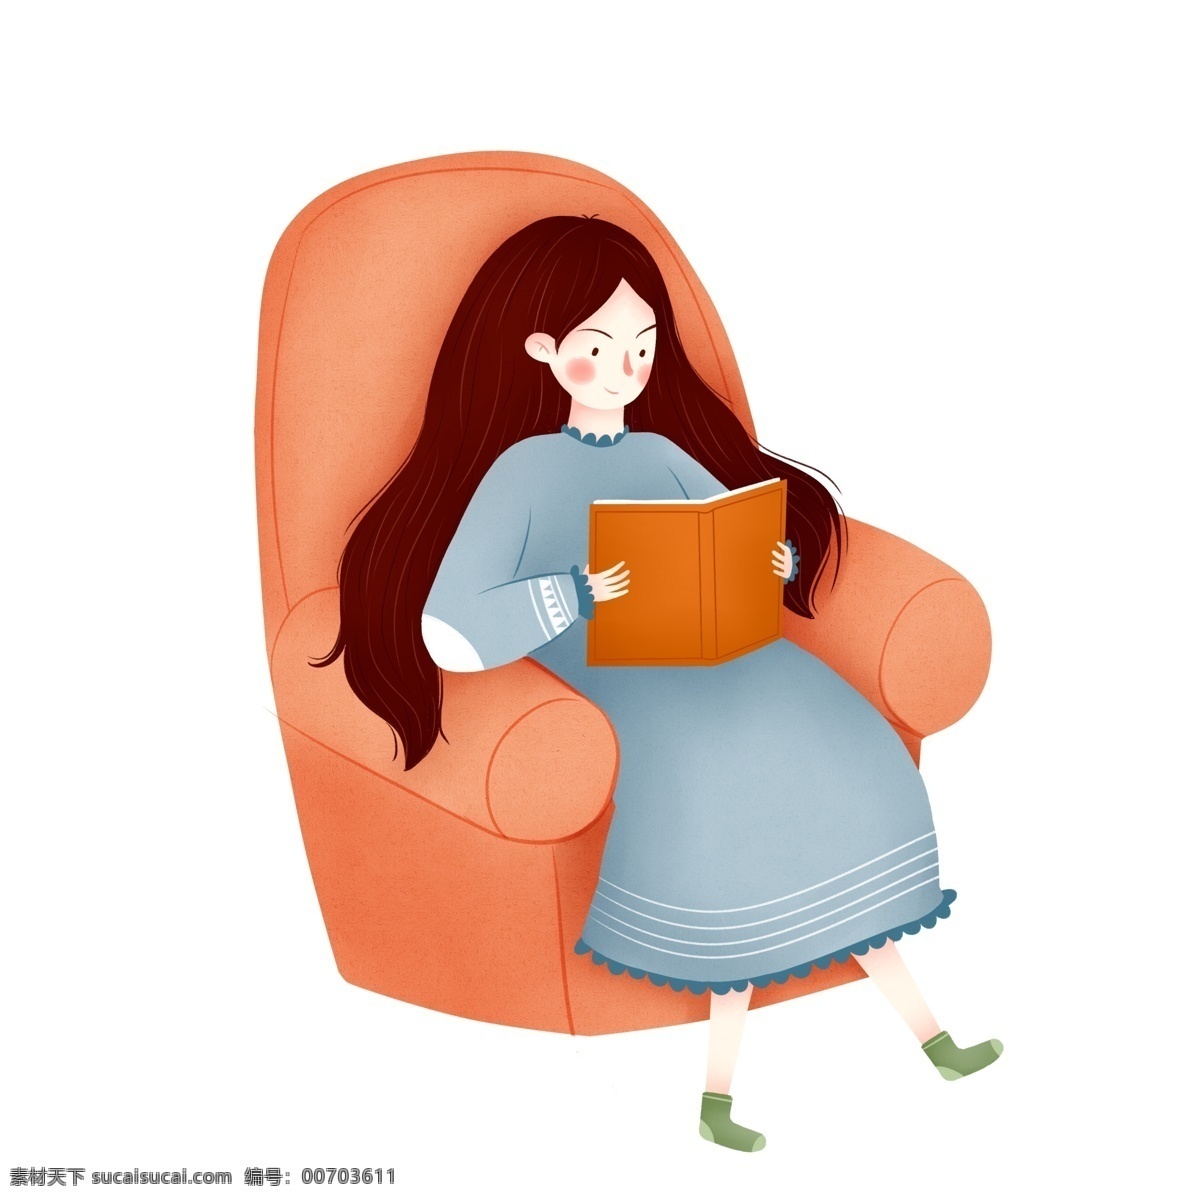 坐在 沙发 上 看书 女孩 元素 人物 简约 阅读 长发女孩 手绘 元素装饰 元素设计 psd元素